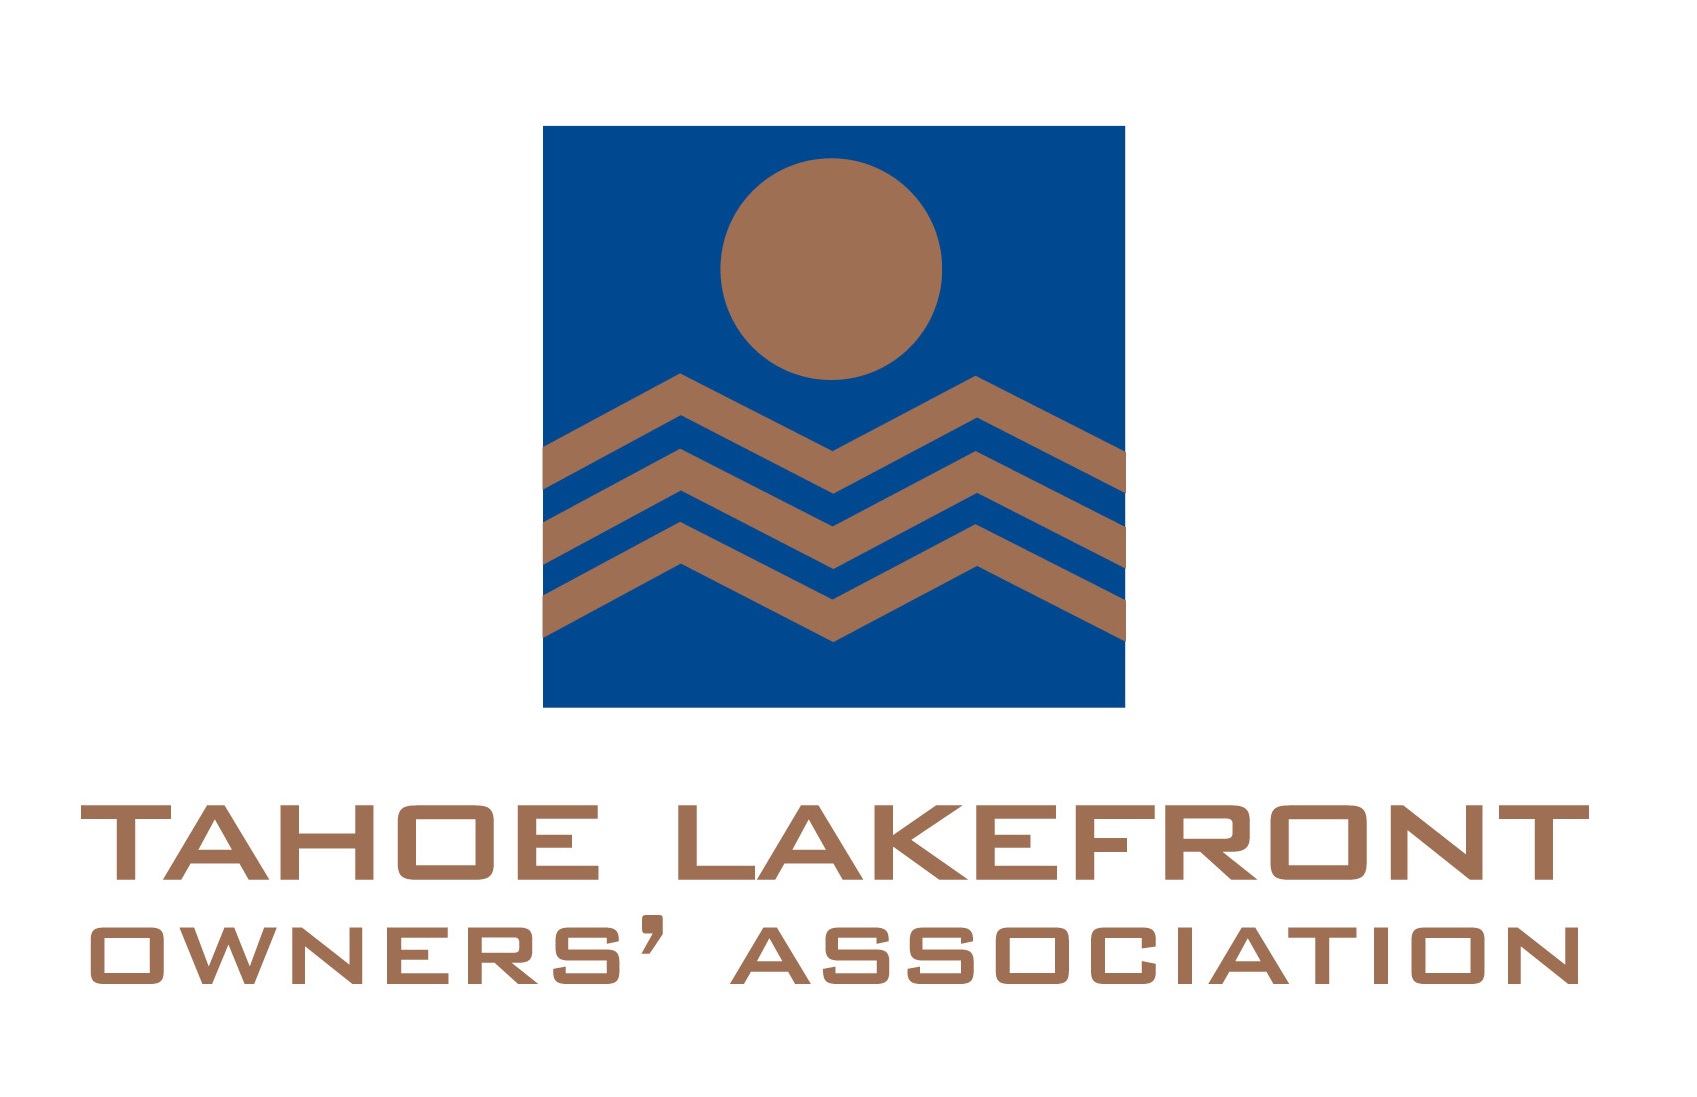 asociación de propietarios de tahoe lakefront